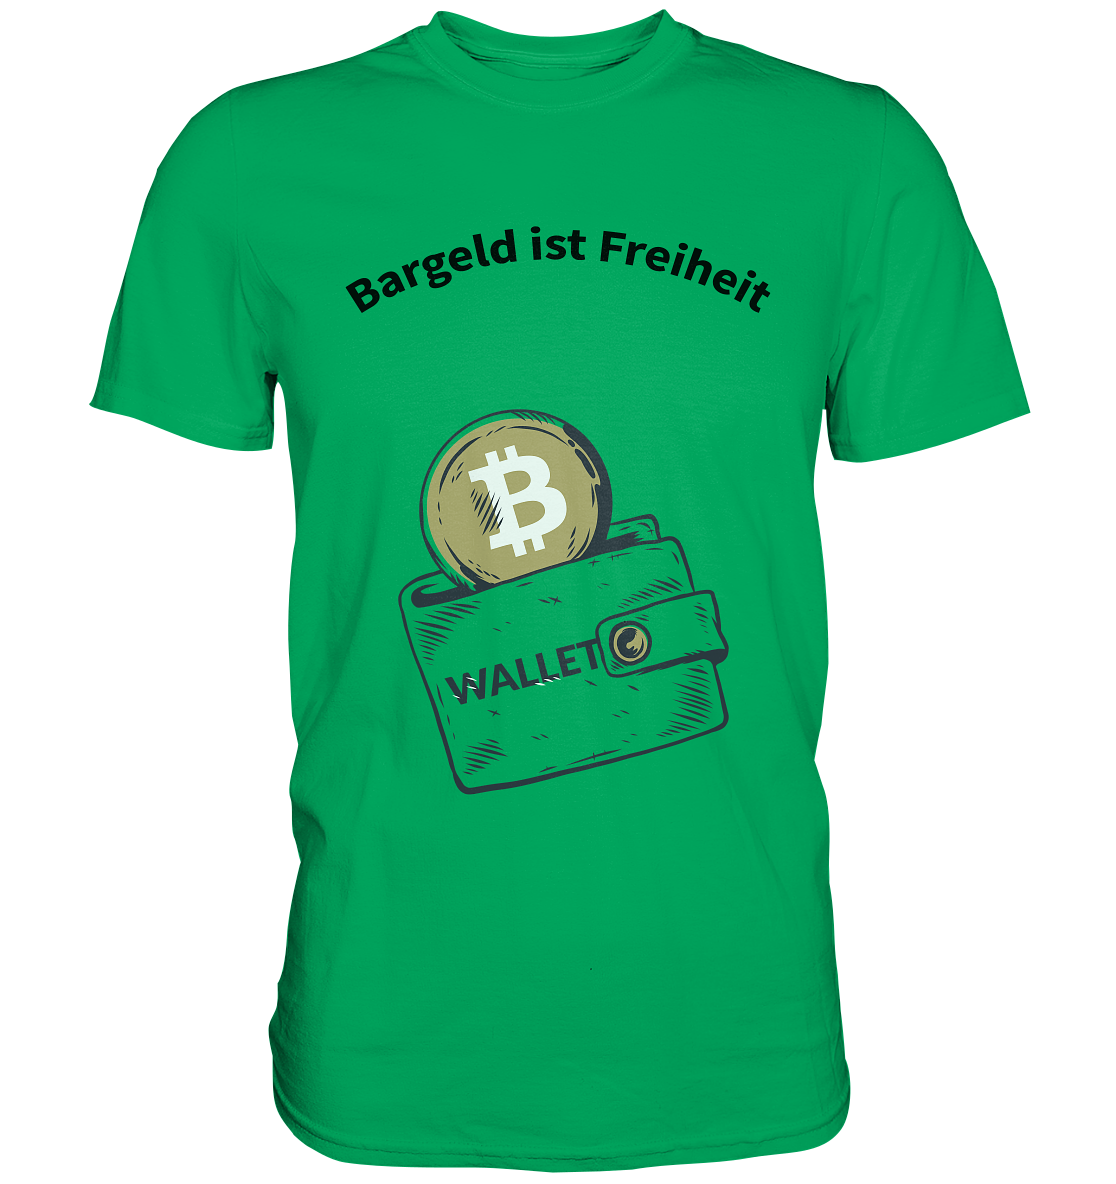 Bargeld ist Freiheit - Premium Shirt